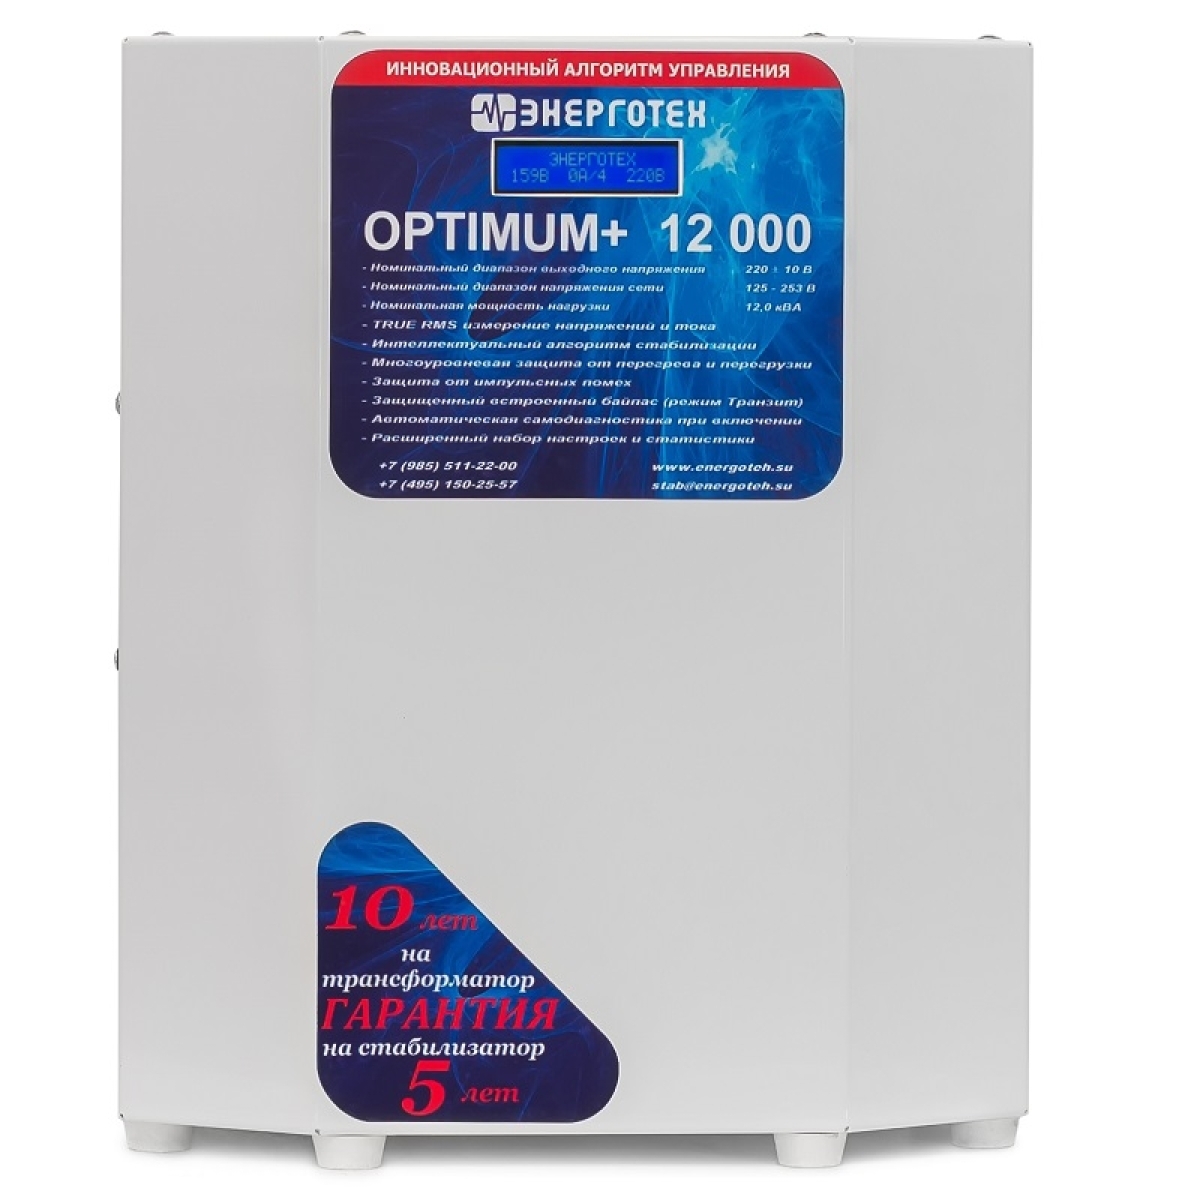 Однофазный стабилизатор Энерготех OPTIMUM+ 12000(HV)